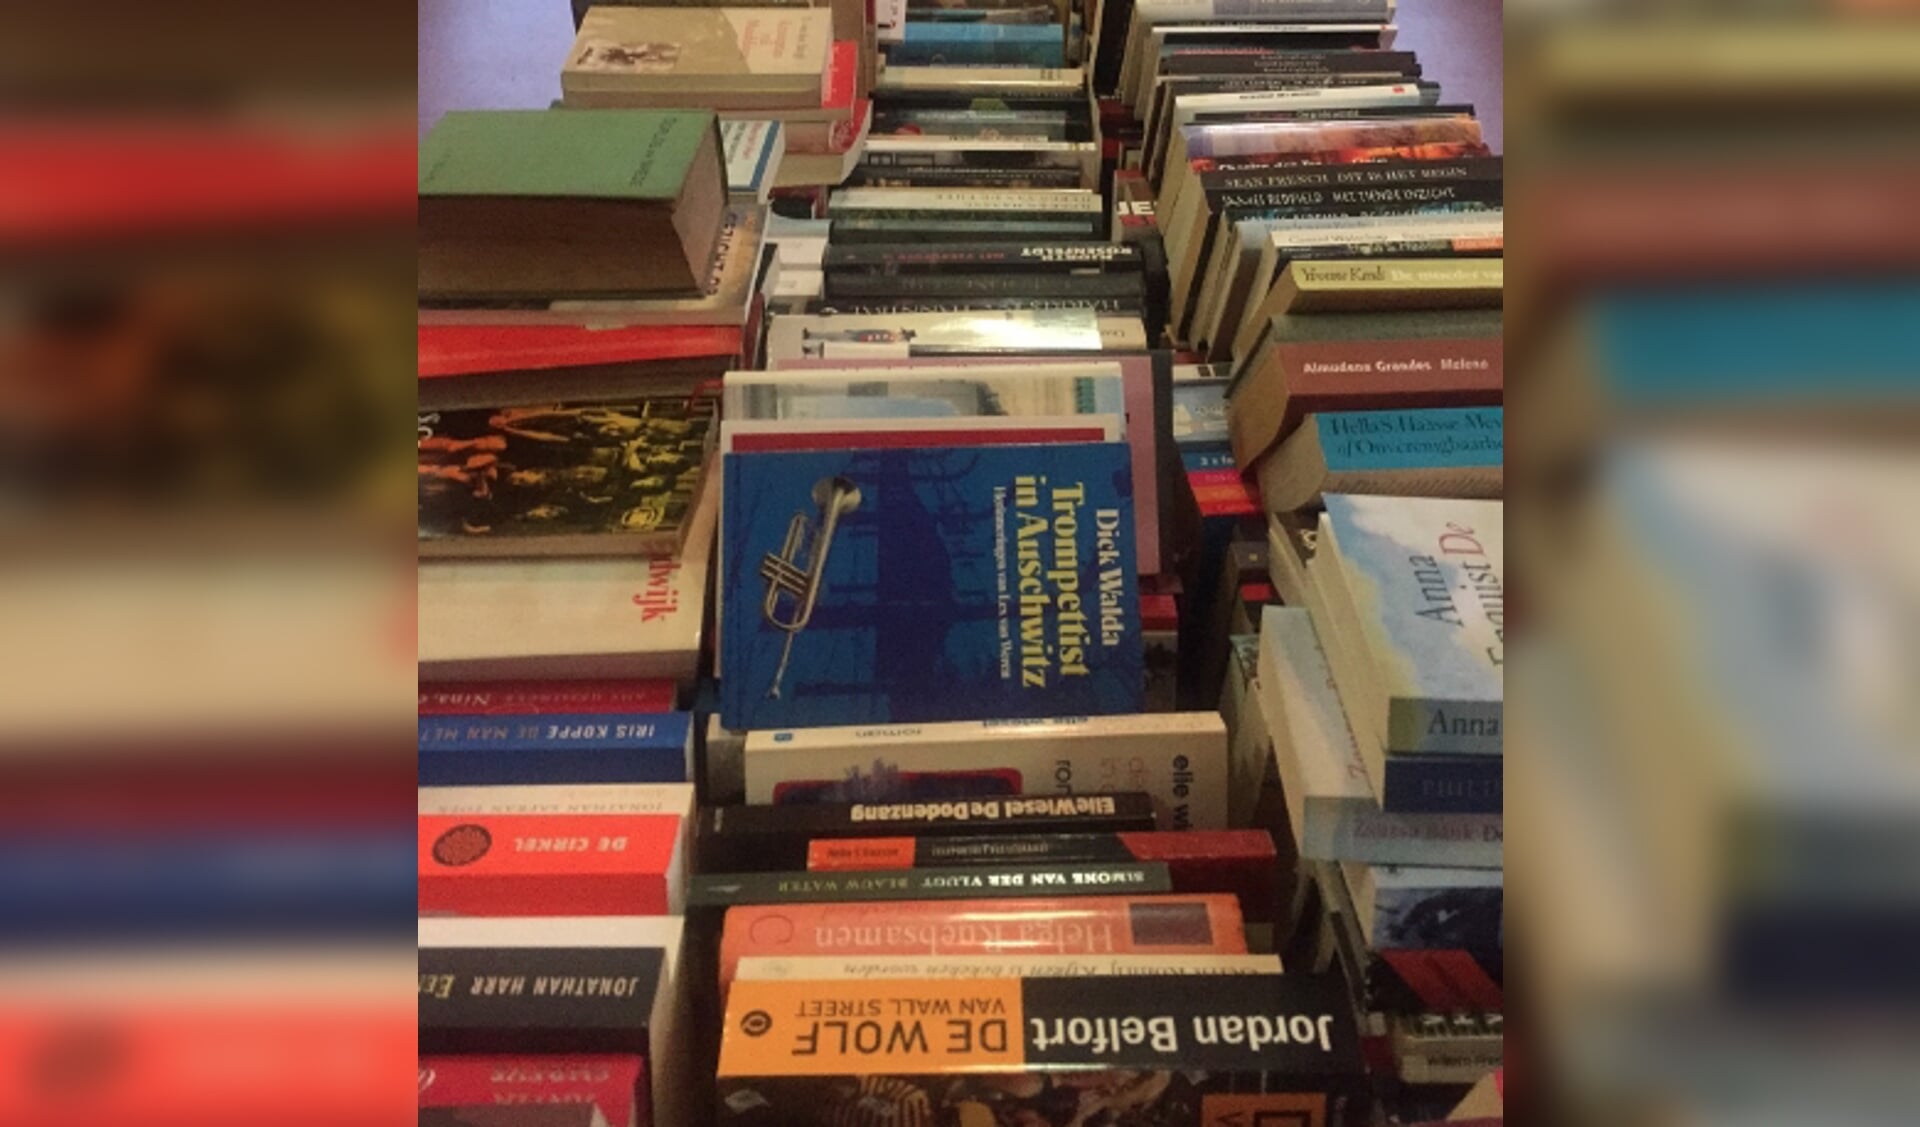 heel veel boeken